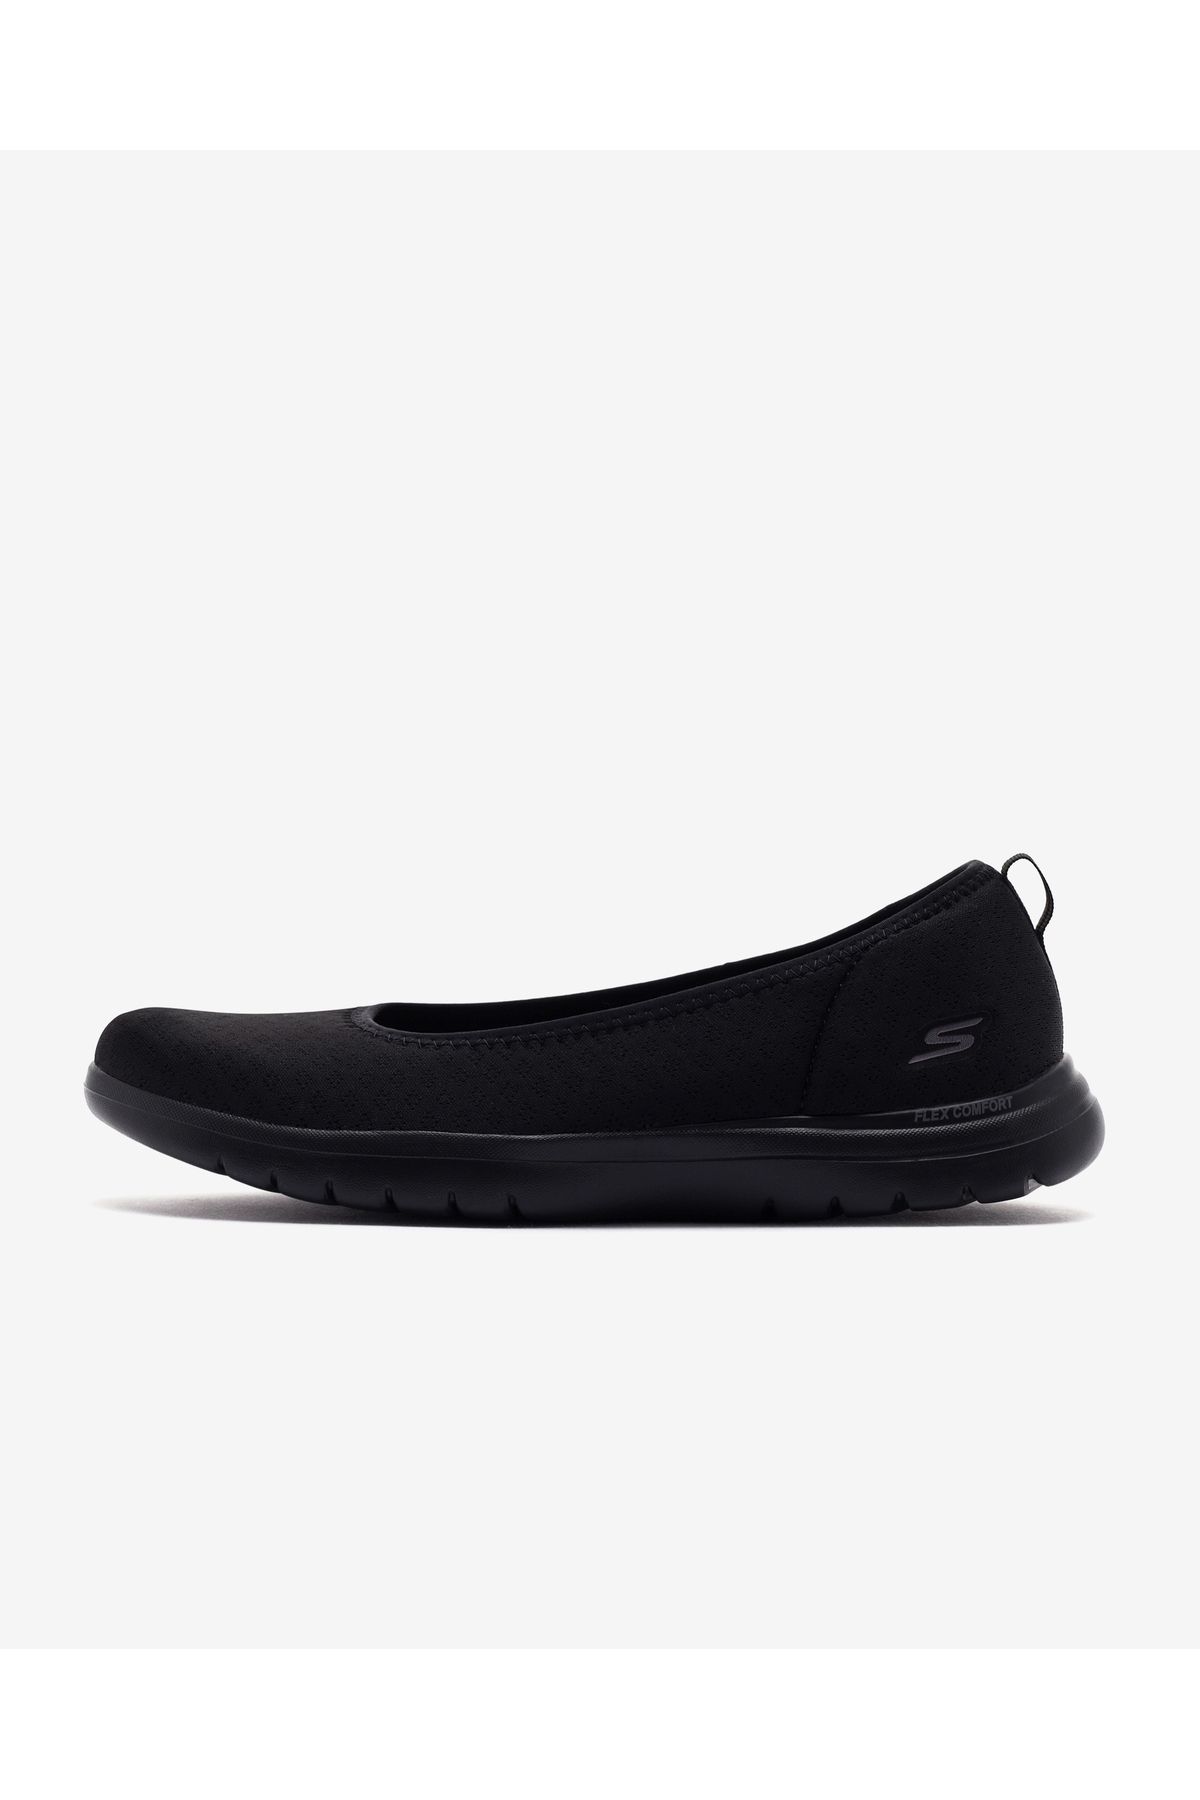 Skechers On - The - Go Flex  -  Siena Kadın Siyah Yürüyüş Ayakkabısı 138360 Bbk